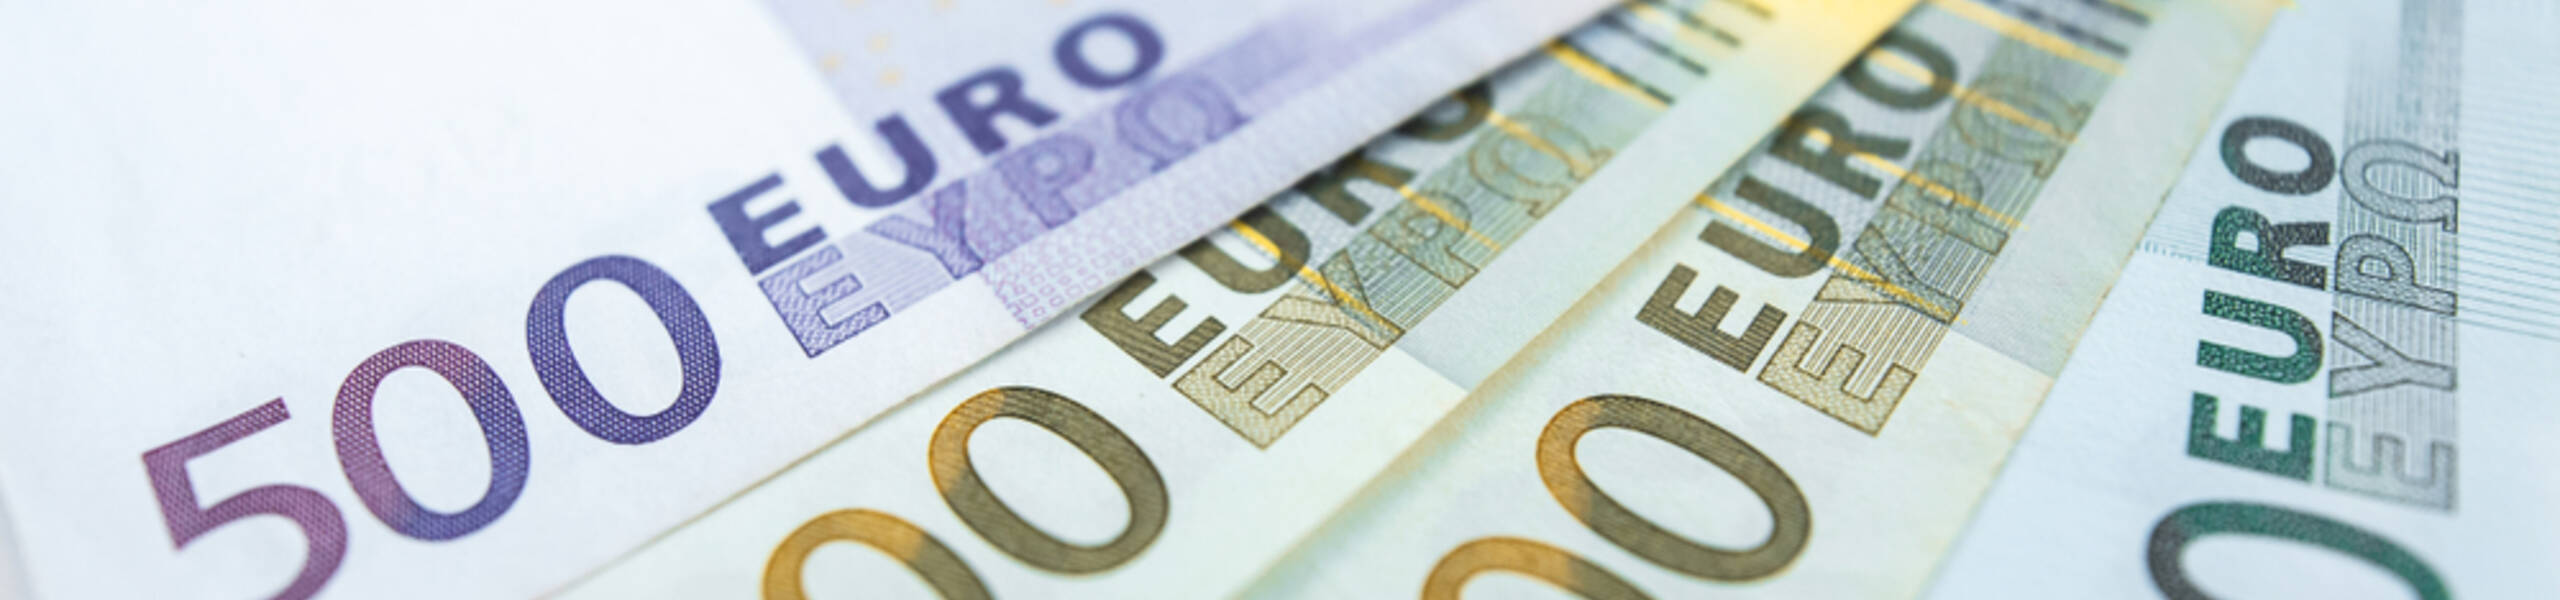 ING का मानना है कि EUR/USD 1.20 को तोड़ देगा, और आपका क्या मानना है? 